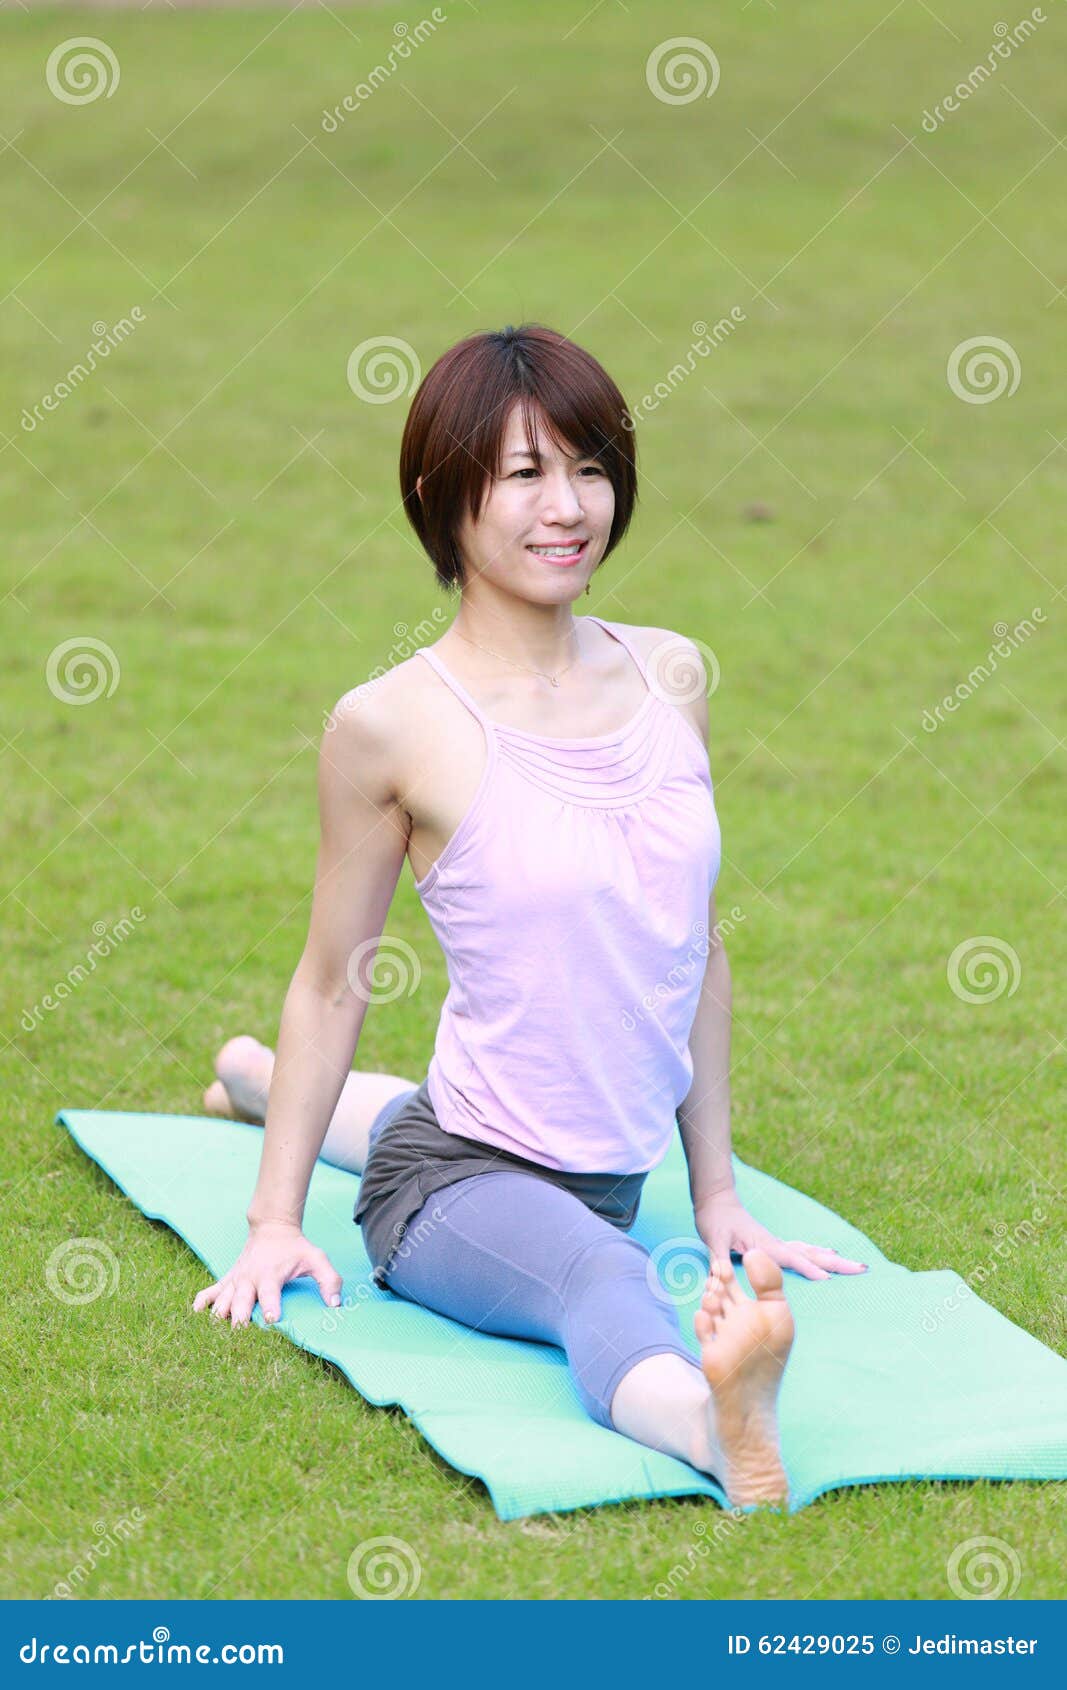 Йога японки. Японская йога. Японка йога. Japan girl на йоге. Йога Япония и девочка.